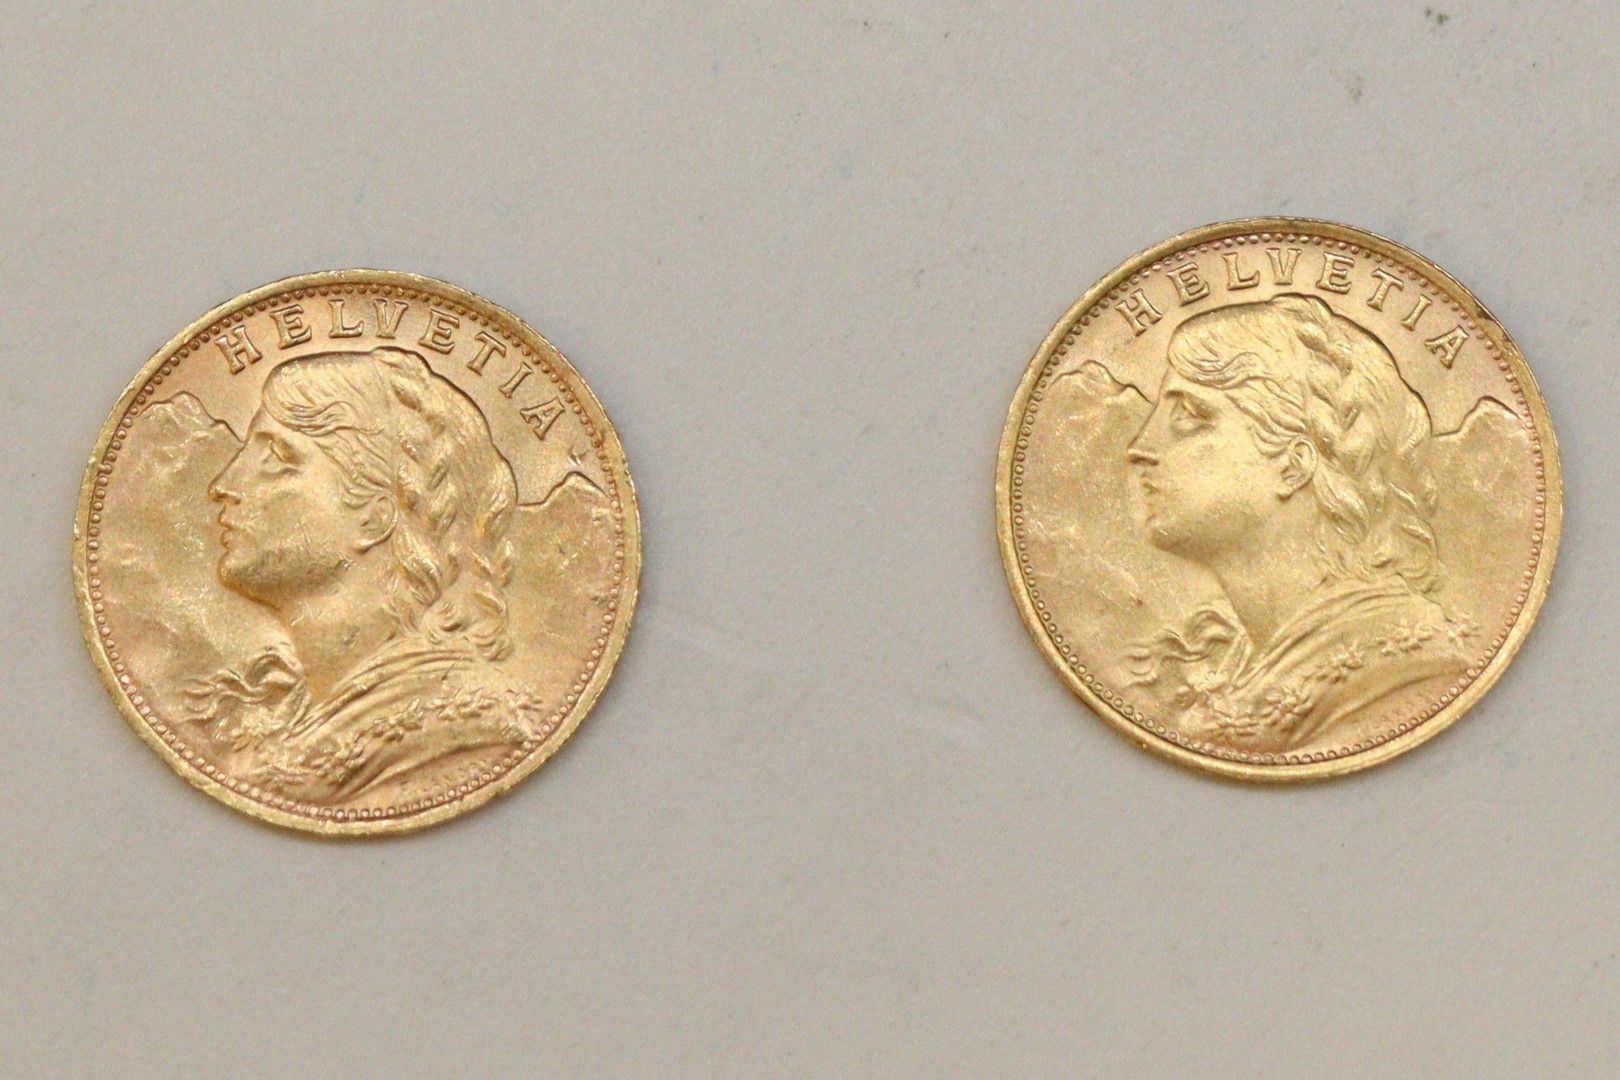 Null Vreneli（1935年LB）两枚20法郎金币拍品

SUP。

重量：13.9克。